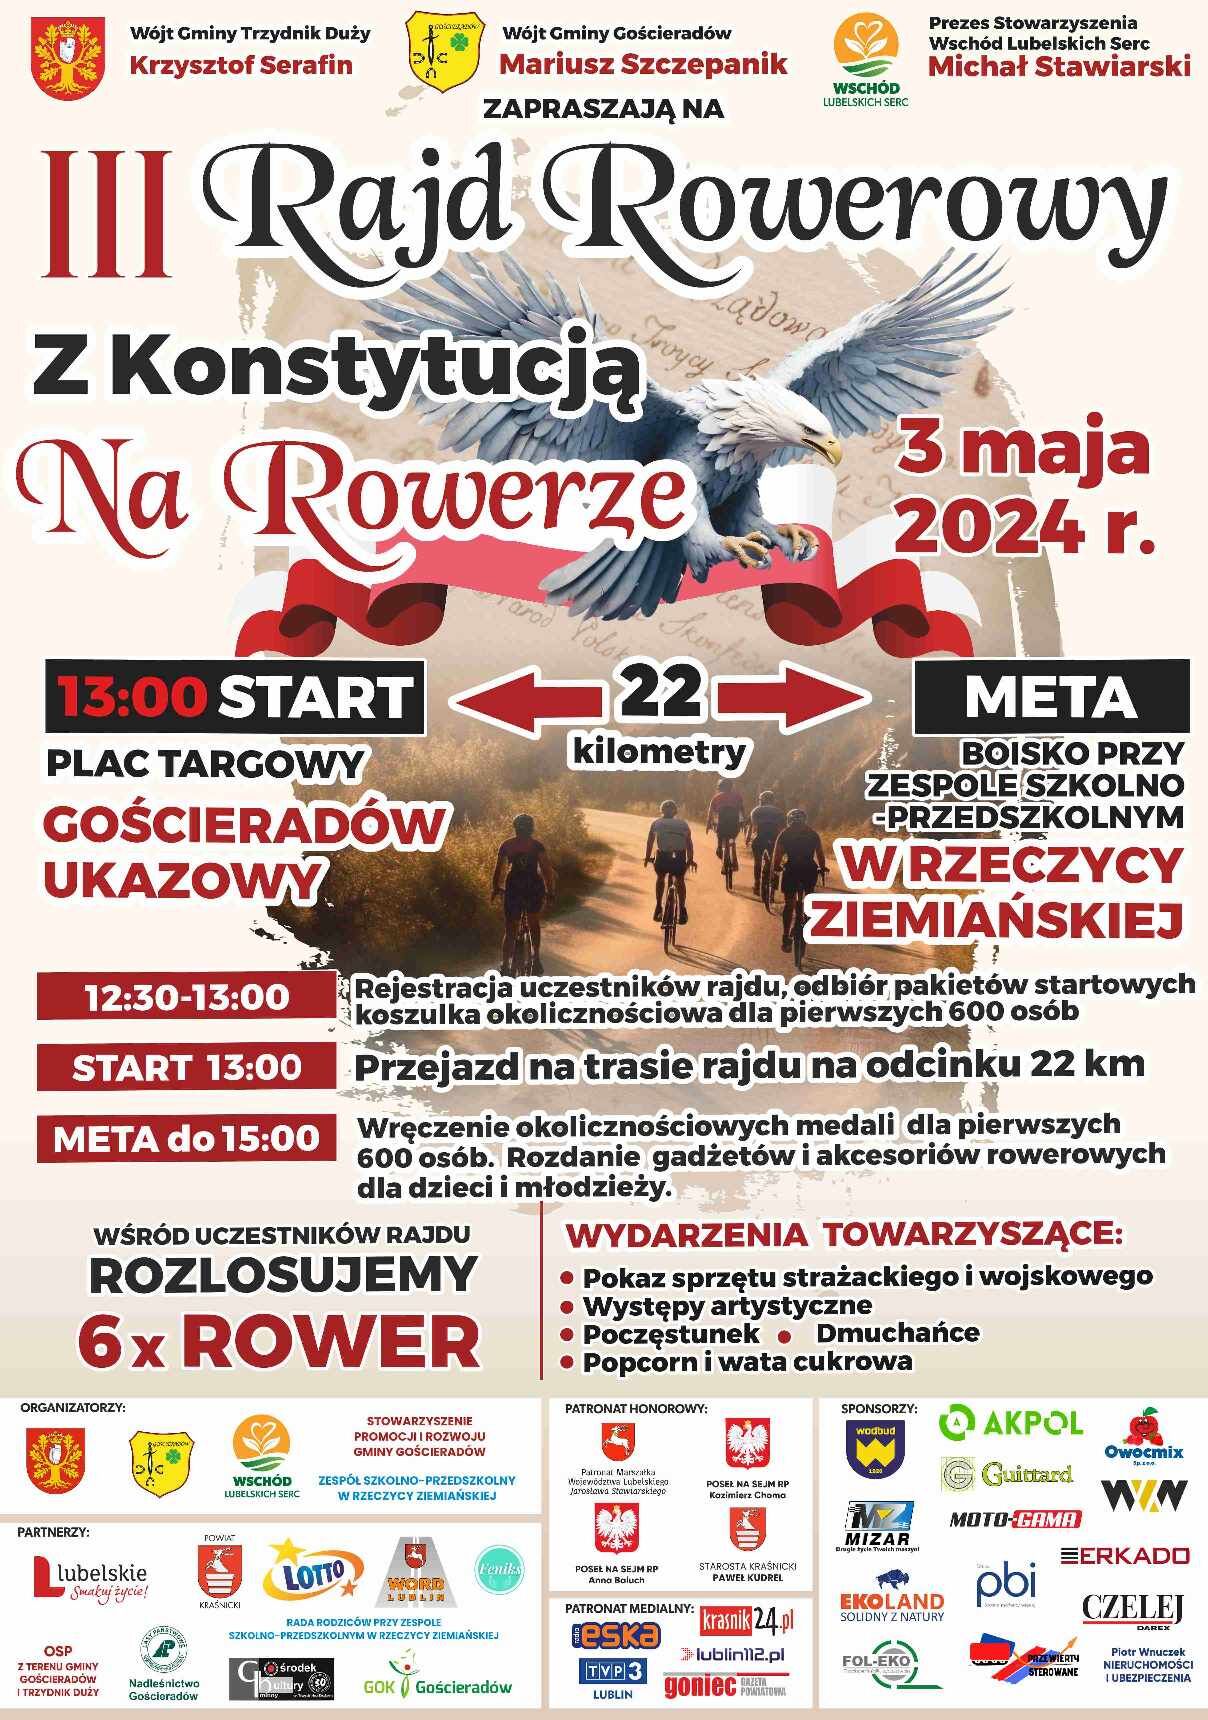 Plakat wydarzenia "III Tryńczański Rajd z Konstytucją", zawierający informacje o dacie i miejscu startu, dystansie, atrakcjach oraz grafikę z orłem i flagami Polski.